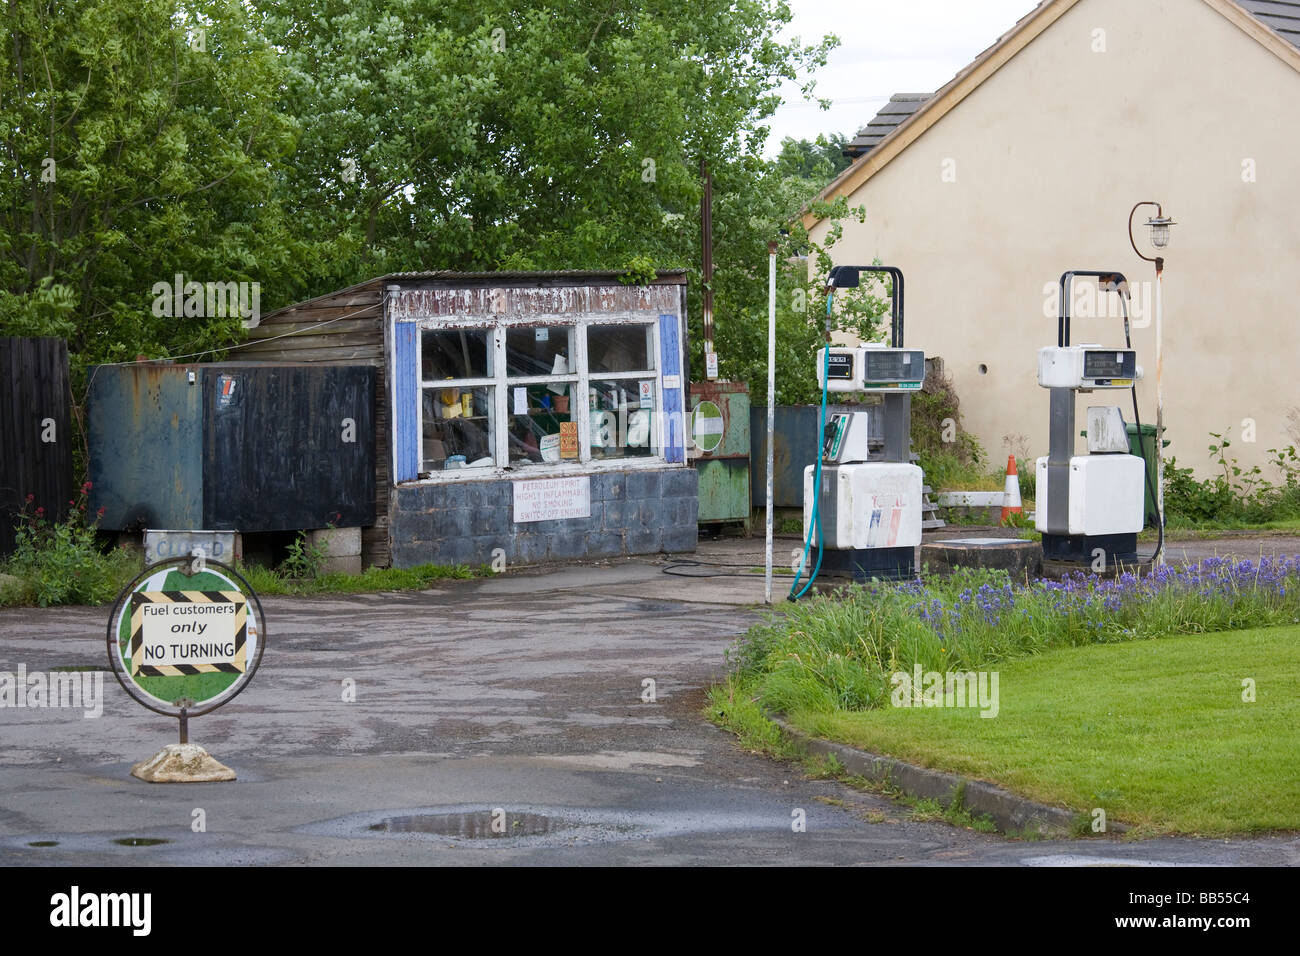 Station essence Rural (station de charge) (GAS STATION) dans un petit village anglais Banque D'Images